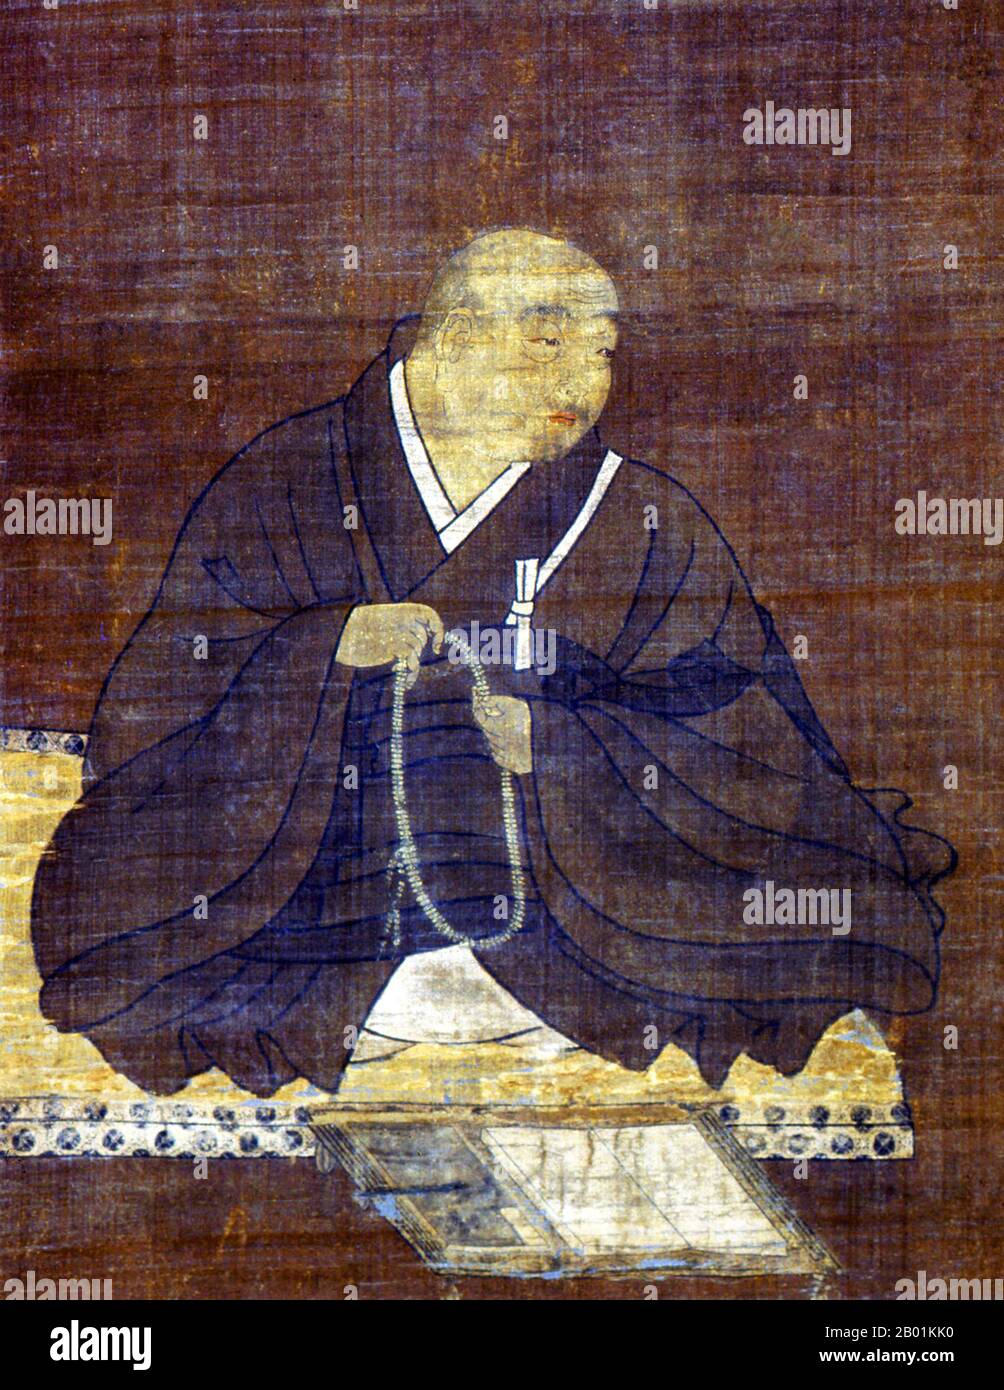 Japon : le moine bouddhiste Honen (13 mai 1133 - 29 février 1212). Peinture à rouleaux suspendus de Fujiwara Takanobu (1142-1205), 12e siècle. Hōnen est le réformateur religieux et fondateur de la première branche indépendante du bouddhisme japonais de la Terre Pure appelée Jōdo shū (« l'école de Terre Pure »). Dans la secte Jōdo Shinshū, il est considéré comme le septième patriarche. Hōnen devient moine de la secte Tendai à un âge précoce, mais devient mécontent et cherche une approche du bouddhisme que n'importe qui peut suivre, même pendant l'âge perçu du déclin du Dharma. Banque D'Images